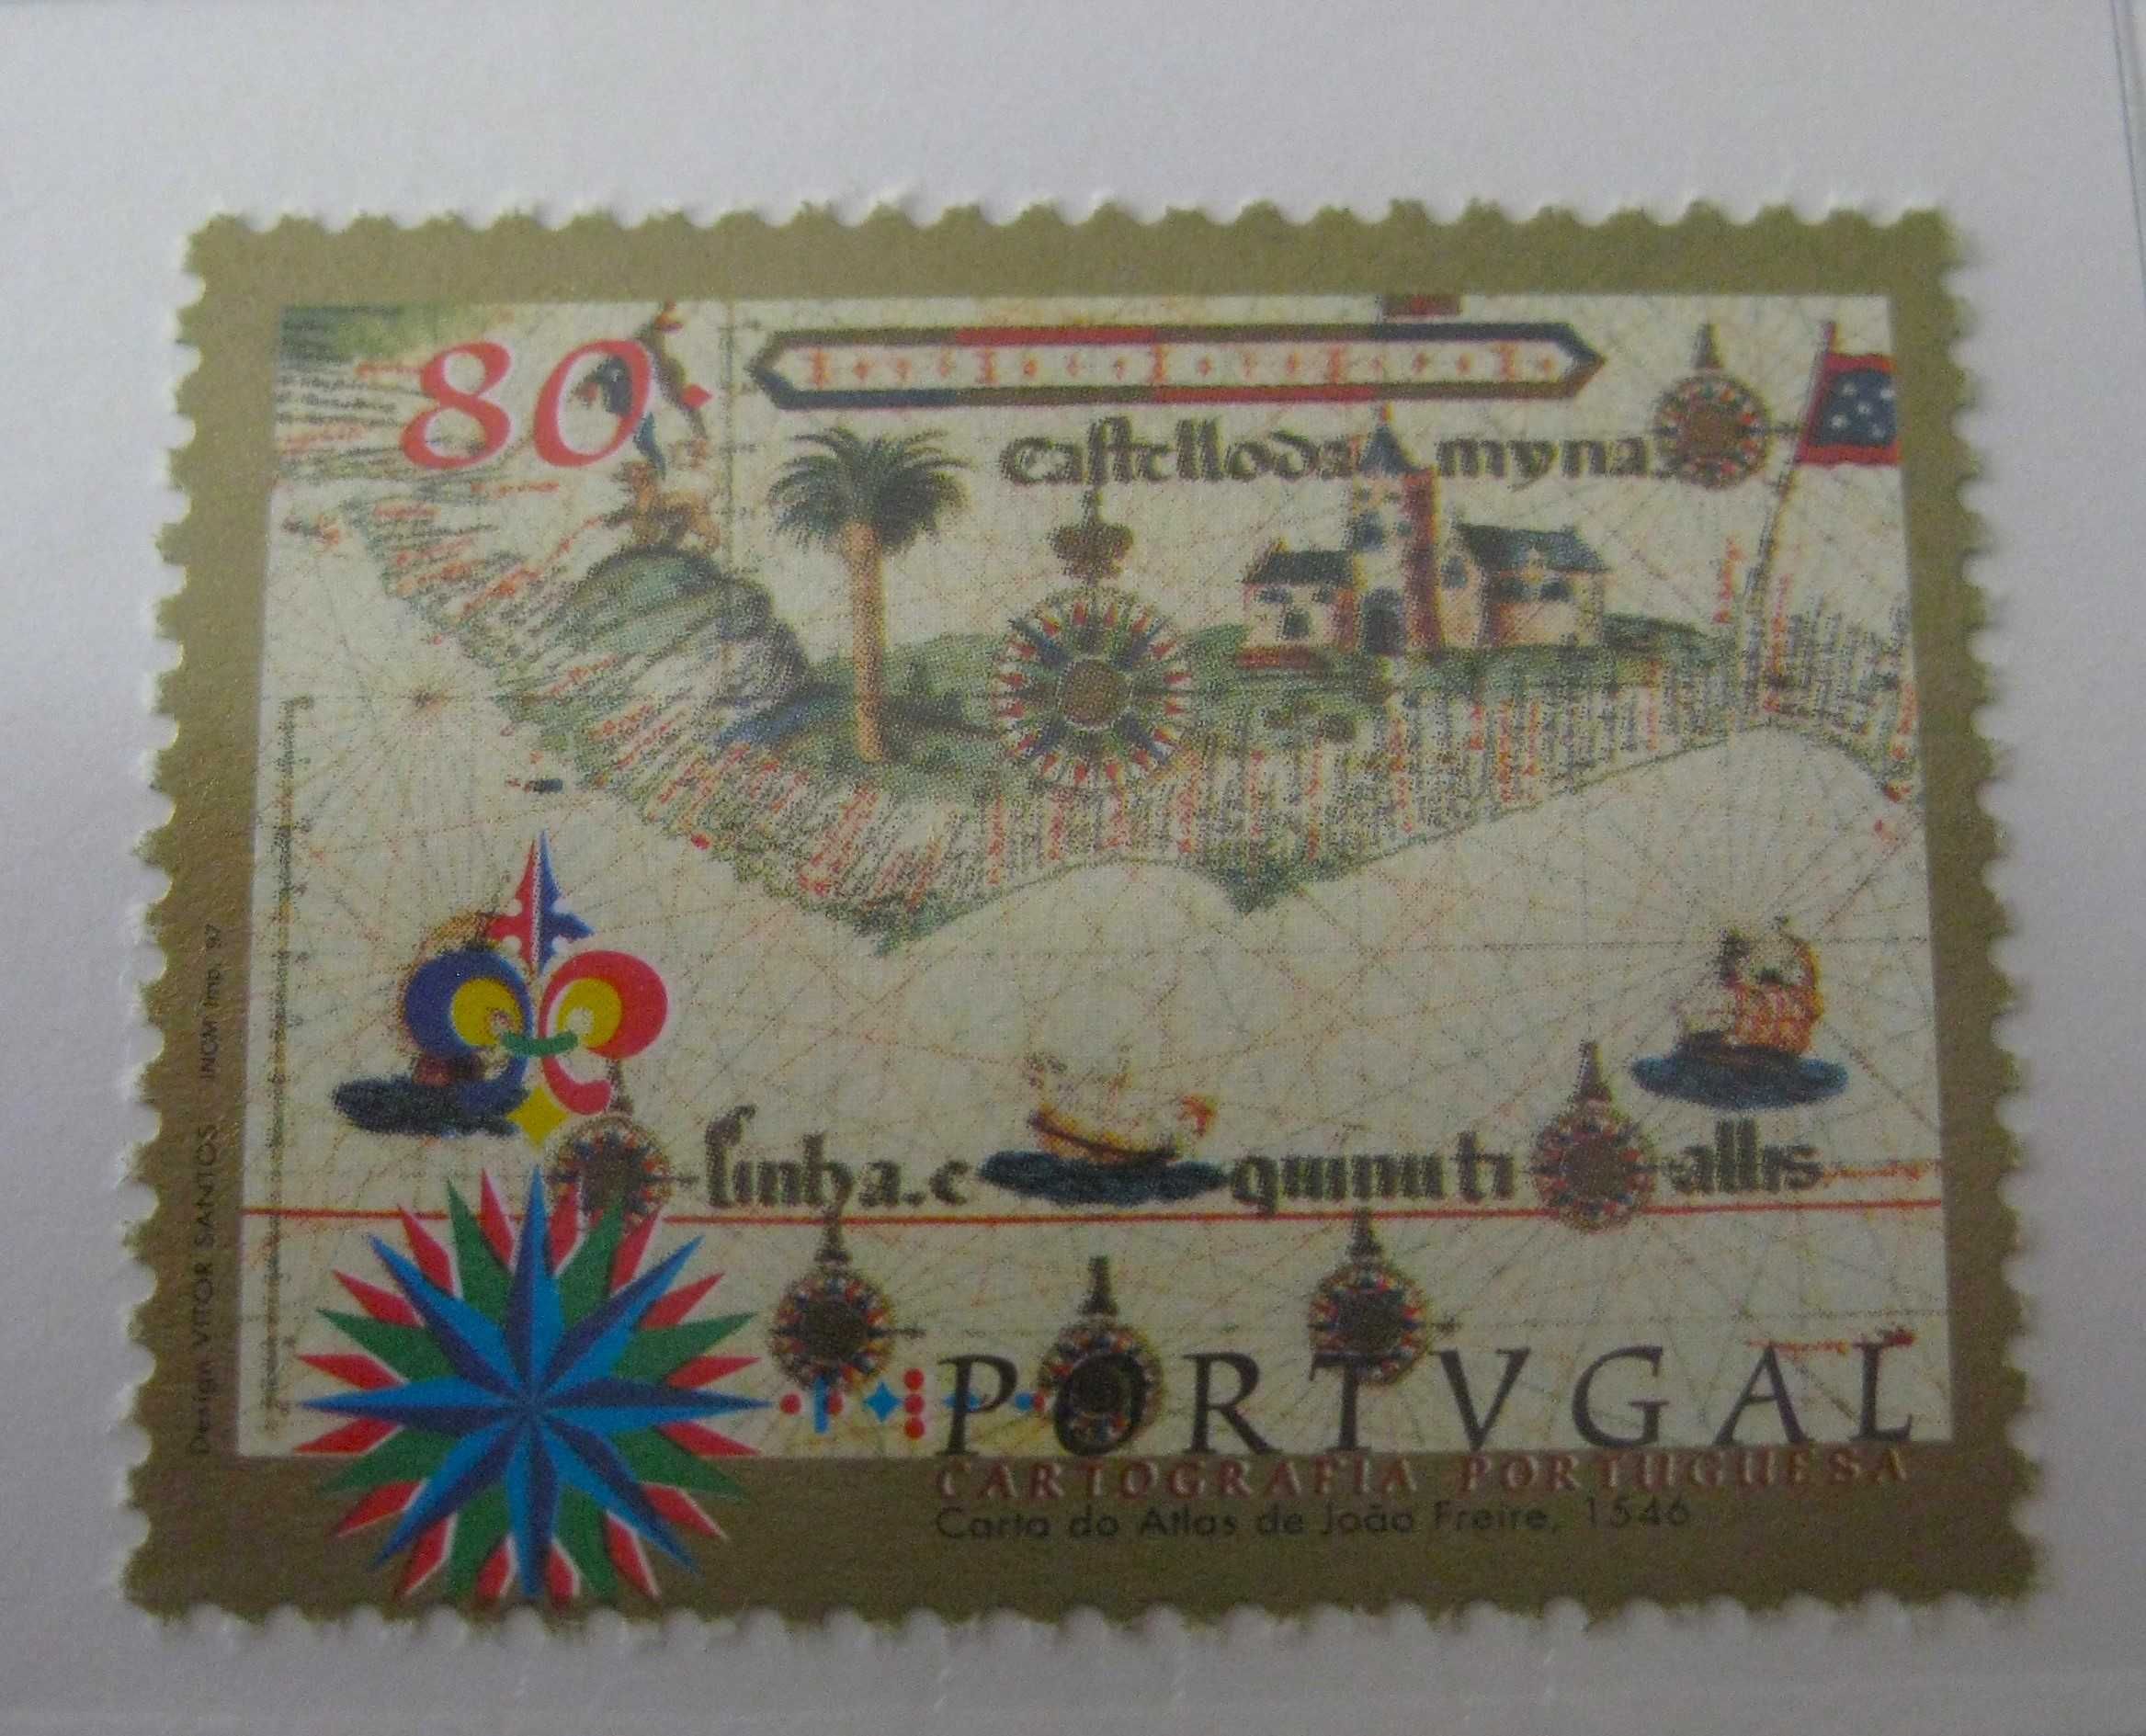 Série nº 2446/49 - Cartografia Portuguesa 1997